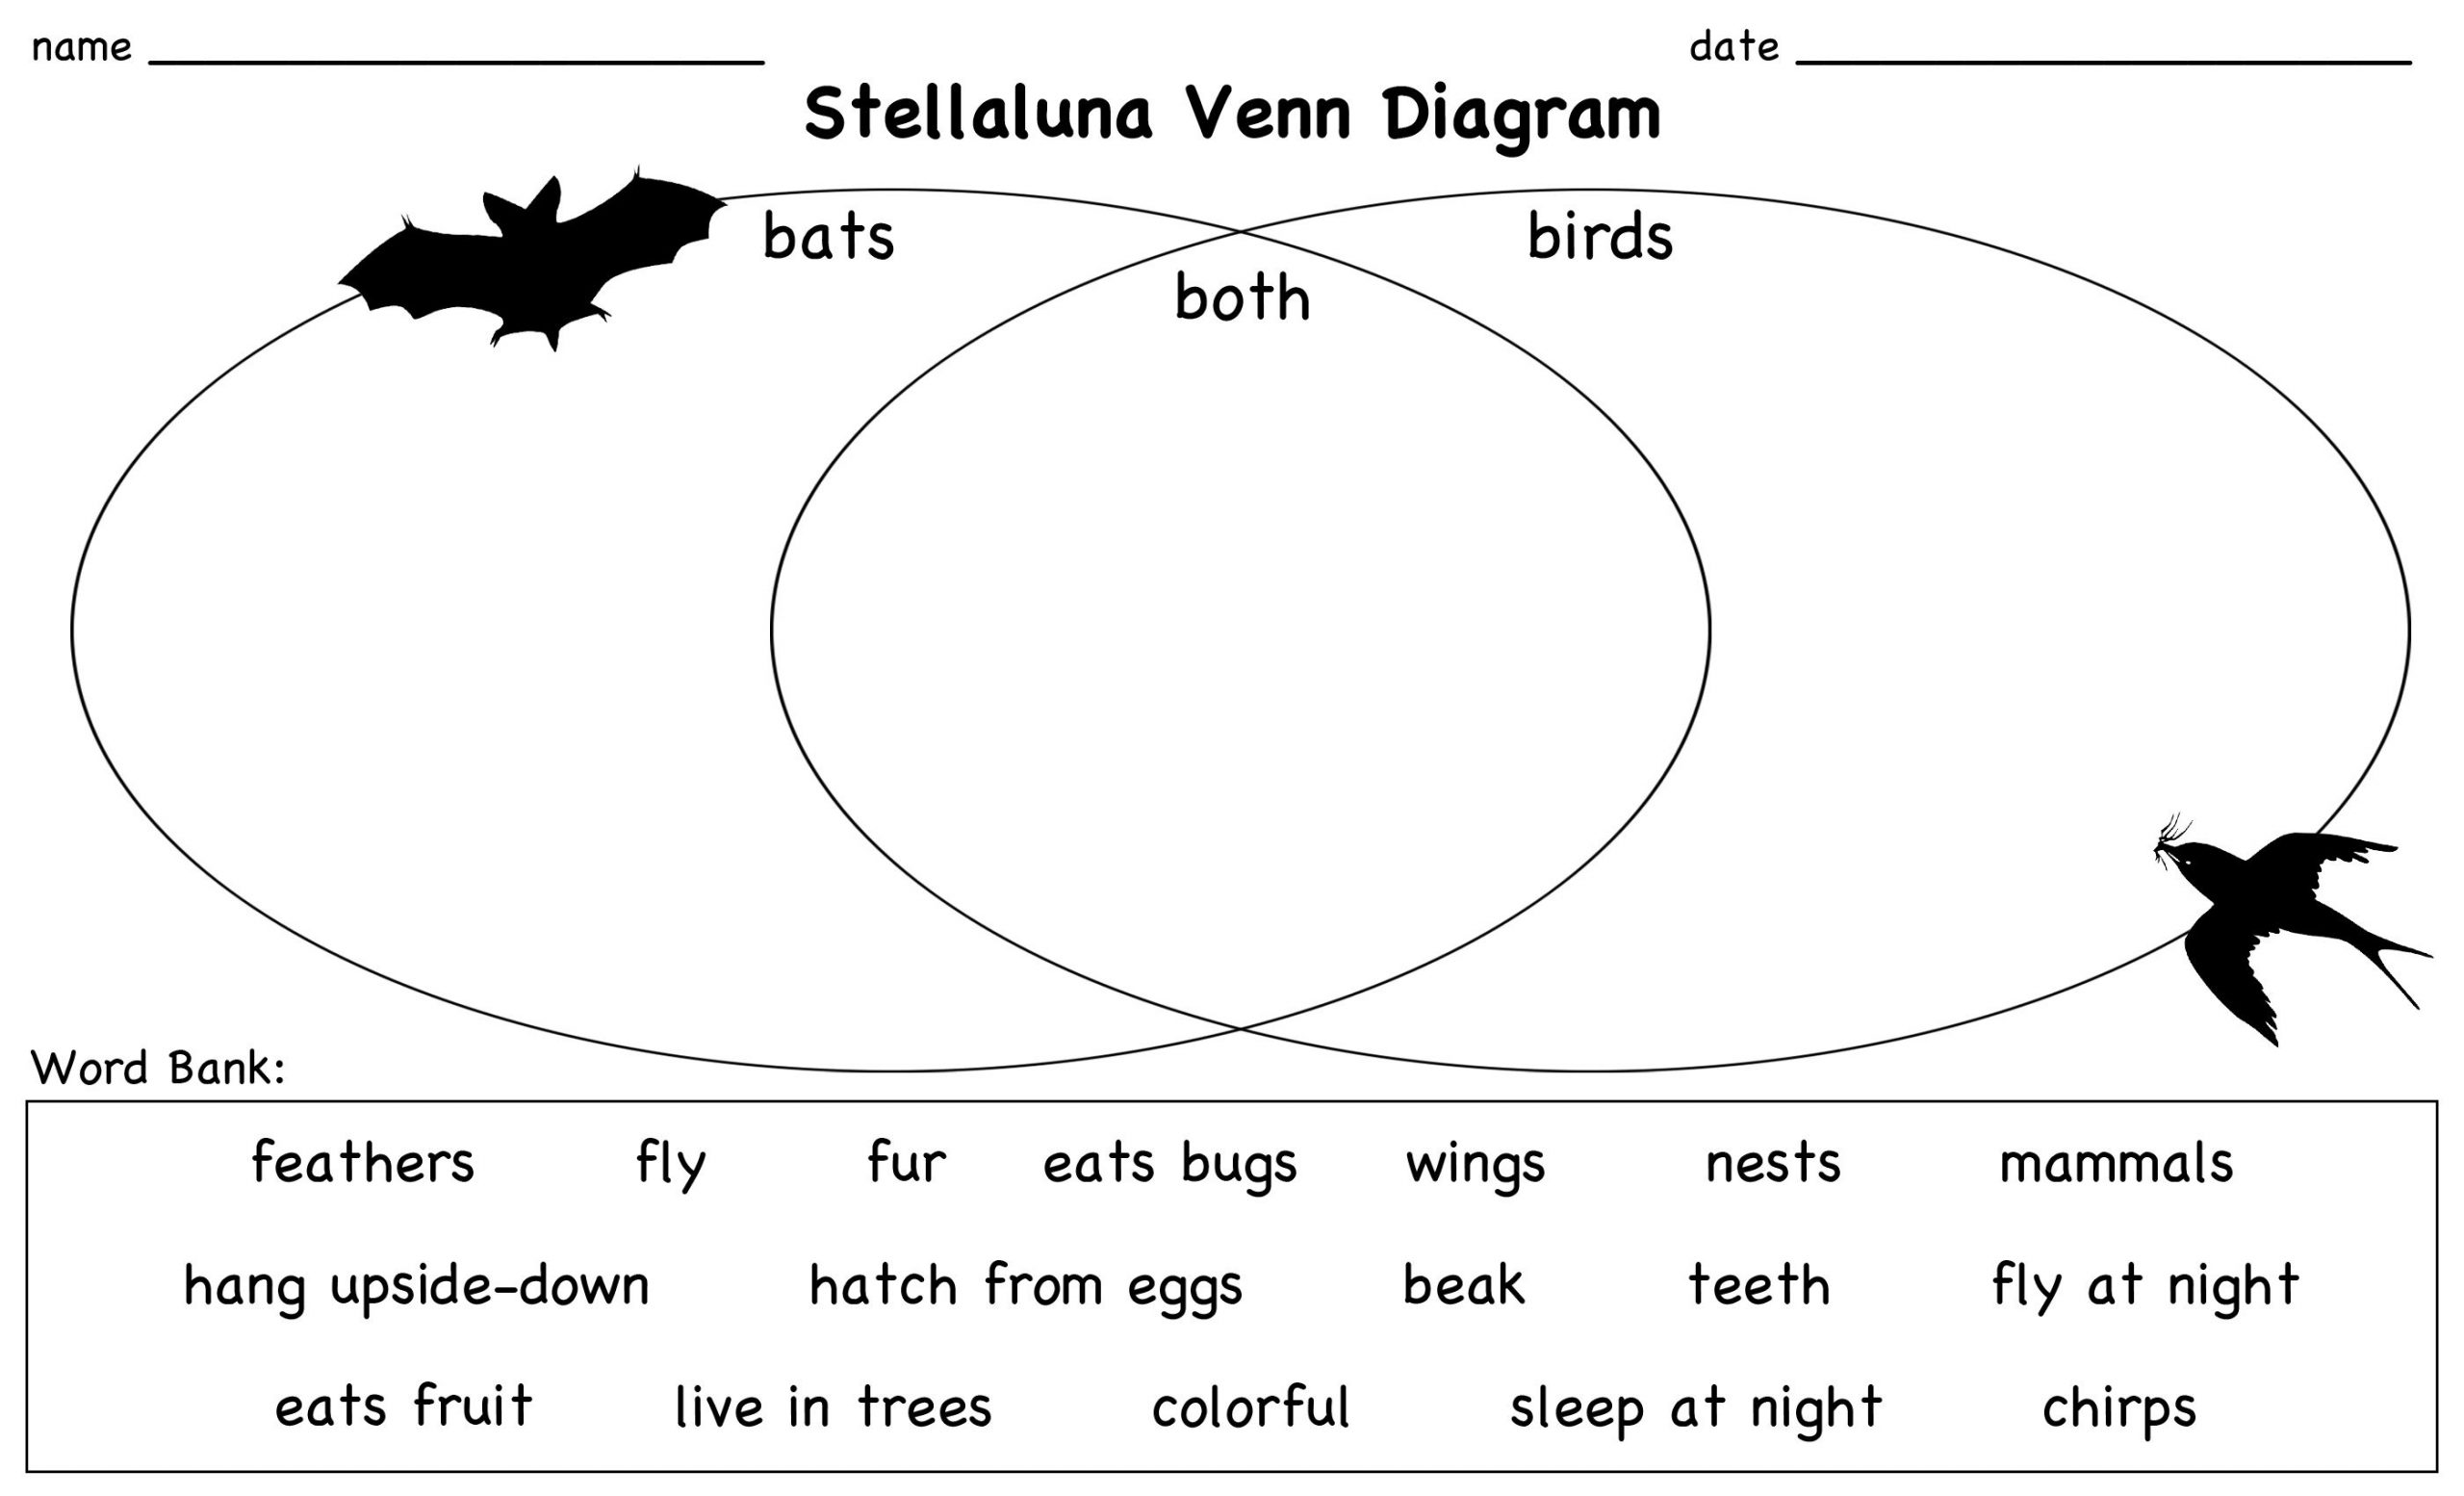 Stellaluna Venn Diagram Lesson | Stellaluna, Venn Diagram